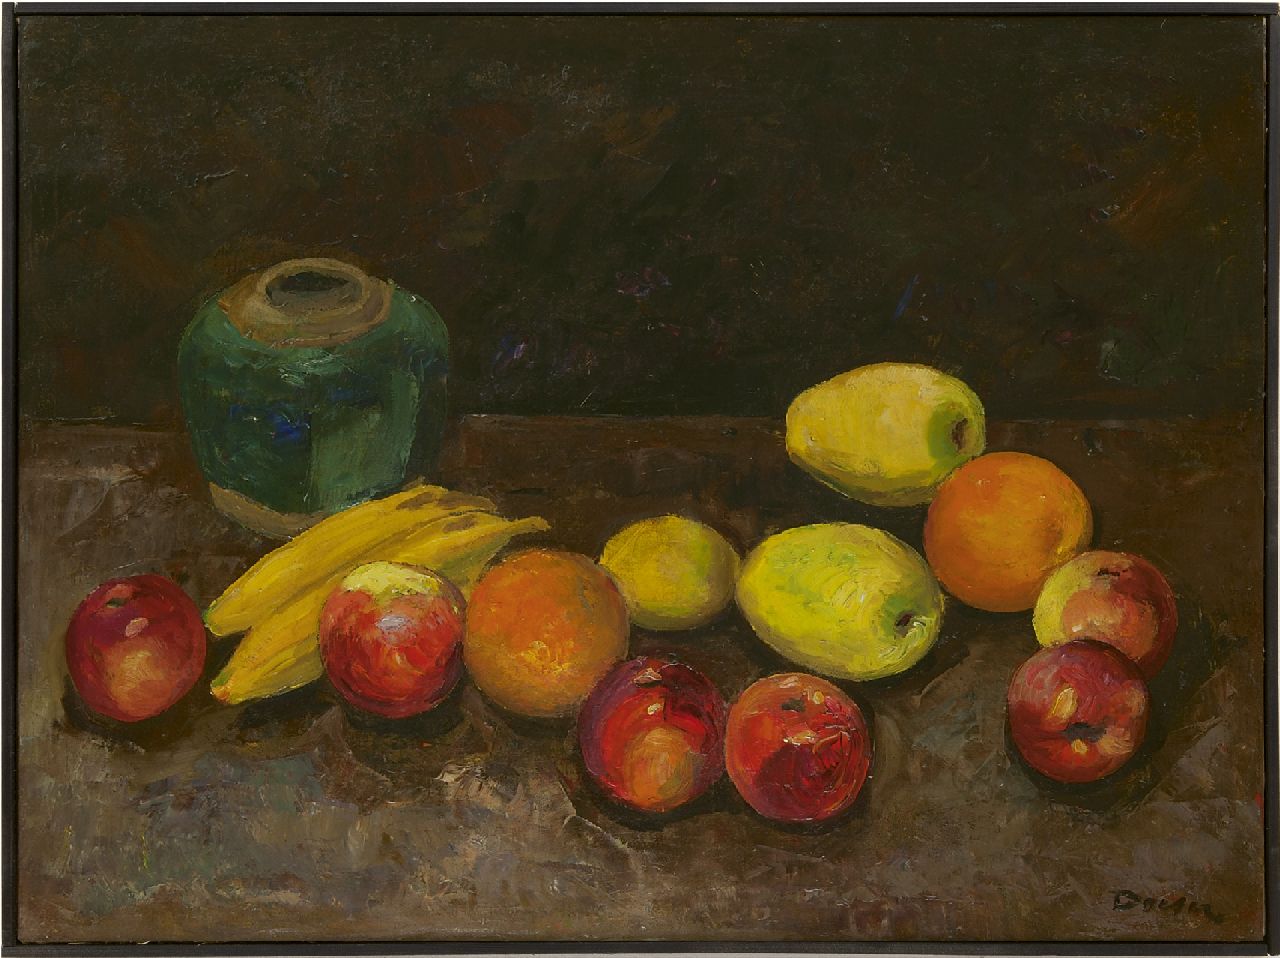 Doeser J.J.  | 'Jacobus' Johannes Doeser | Schilderijen te koop aangeboden | Stilleven met fruit en gemberpot, olieverf op doek 60,8 x 80,5 cm, gesigneerd rechtsonder